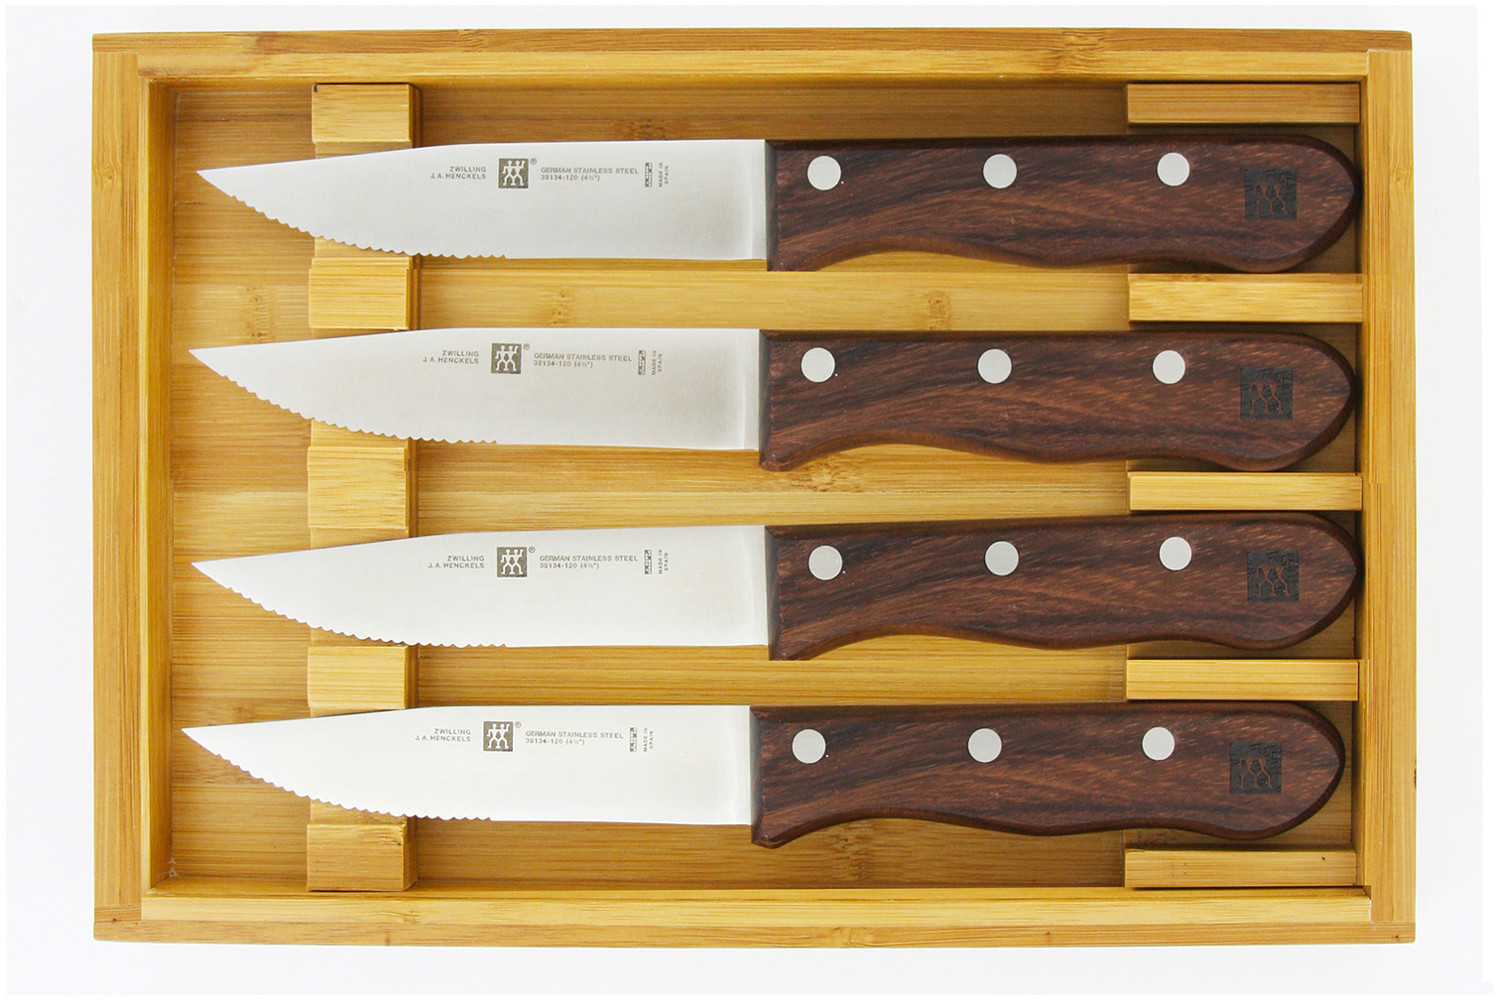 Zwilling J A Henckels TORO Steak Knives, Set of 4